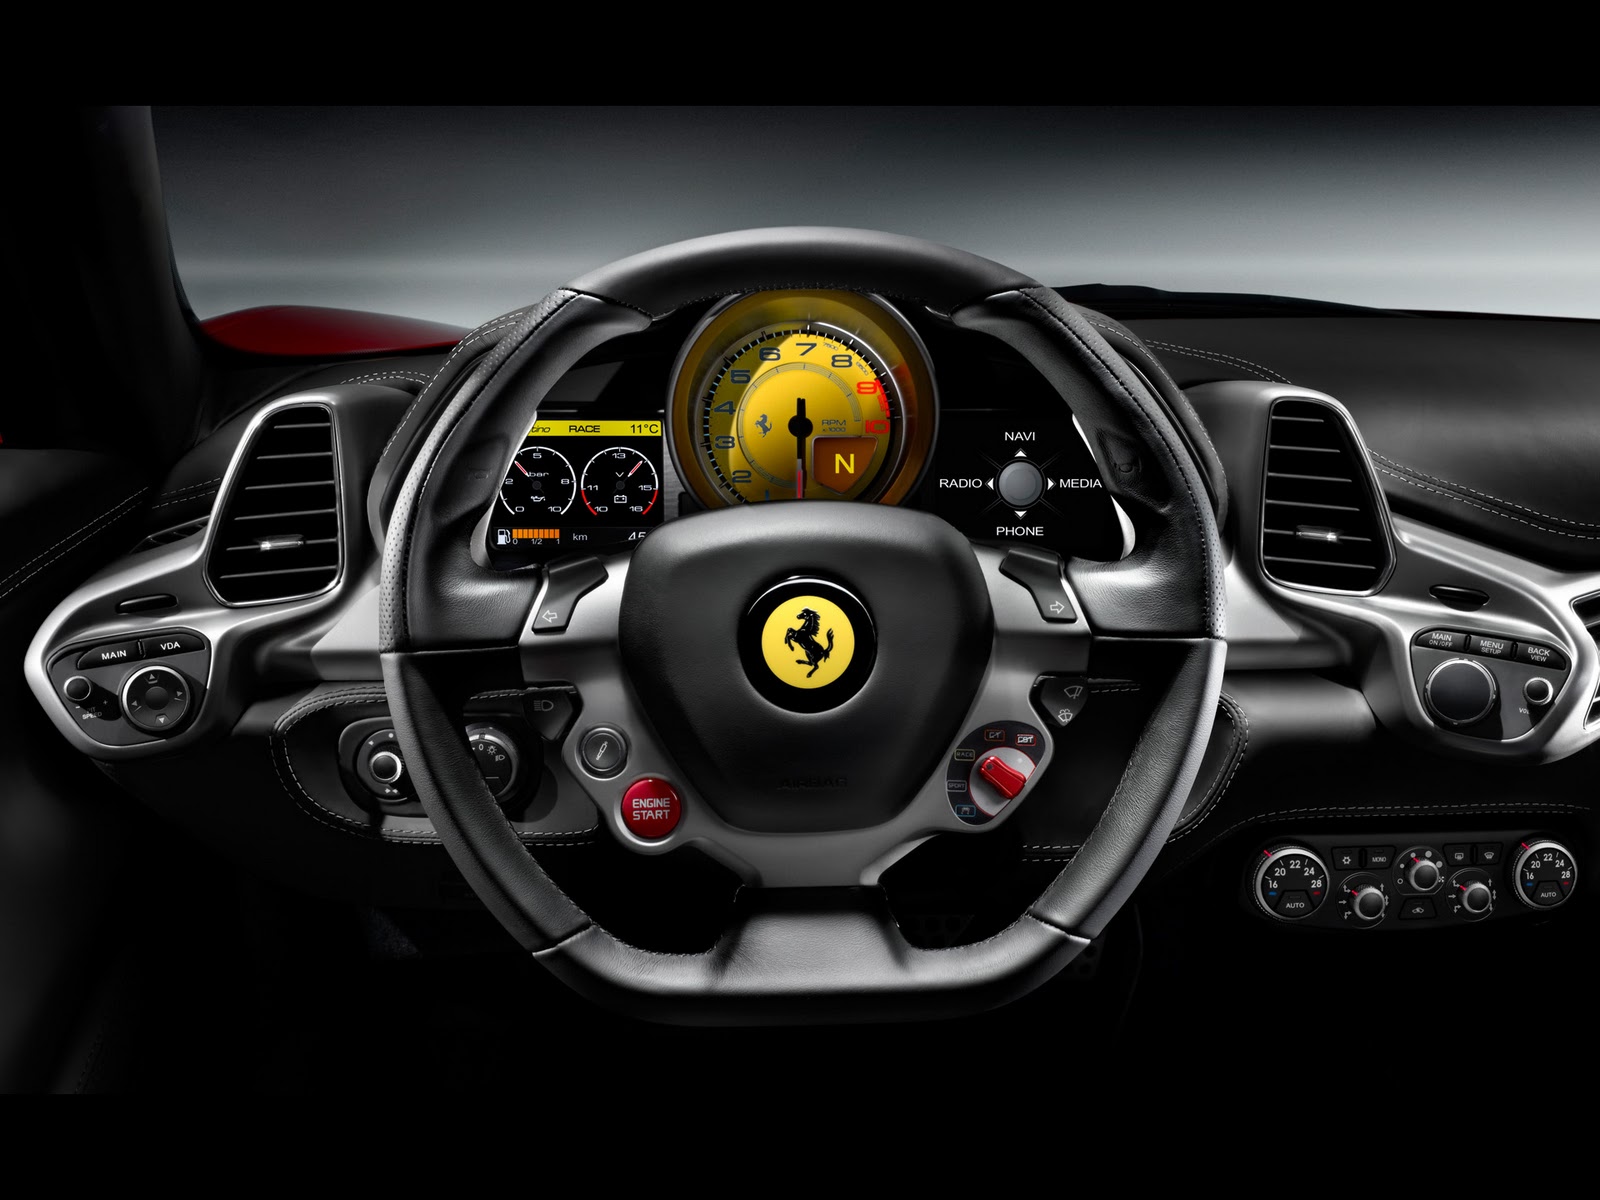 http://1.bp.blogspot.com/_viCh1SFyGrA/TOWjj7wc_6I/AAAAAAAAAE0/SShawEH6B5Q/s1600/2010-Ferrari-458-Italia-Dashboard-1920x1440.jpg